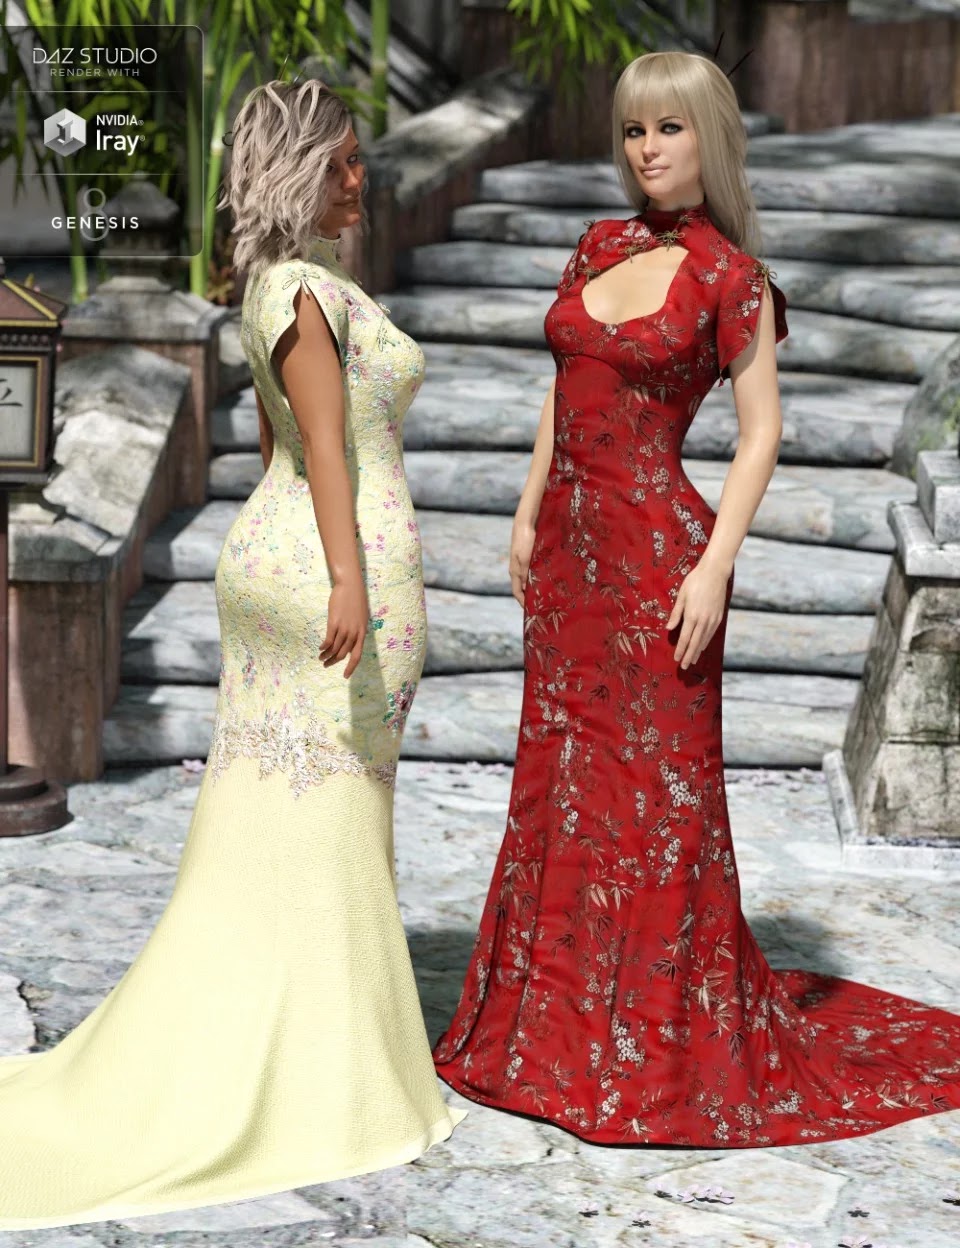 Polyantha Rose Dress Textures_DAZ3D下载站